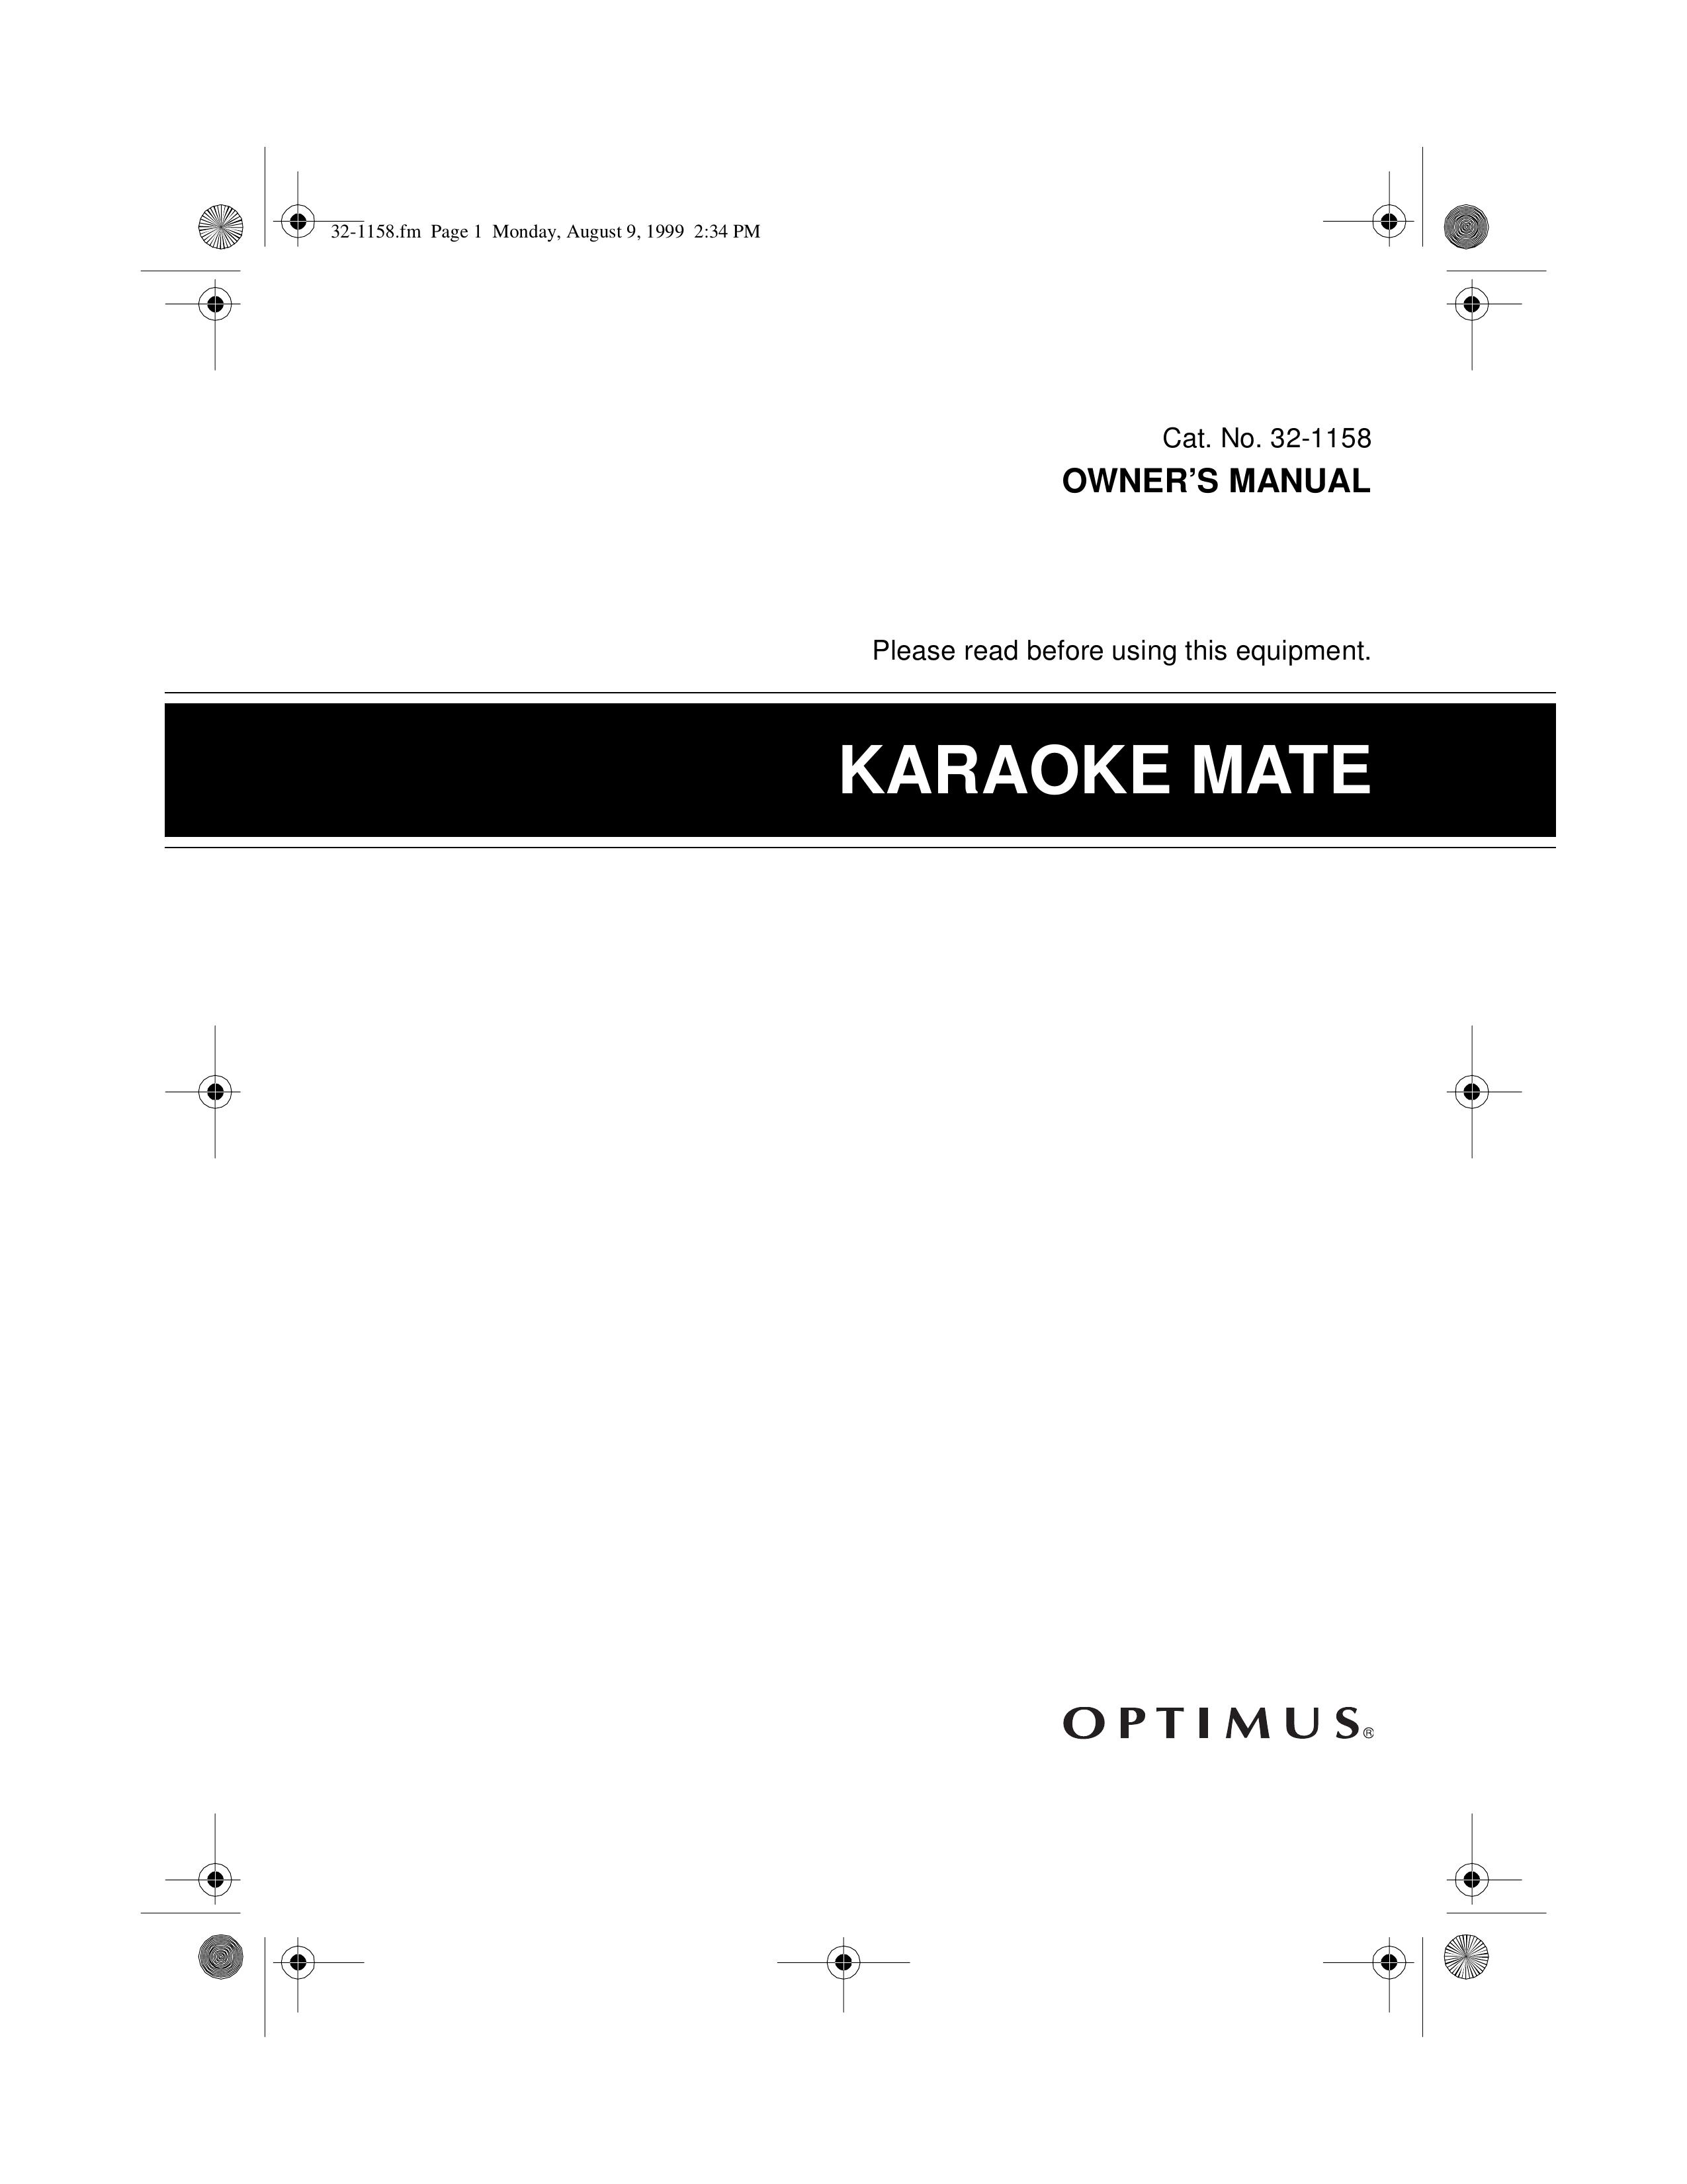 Optimus 32-1158 Karaoke Machine User Manual (Page 1)